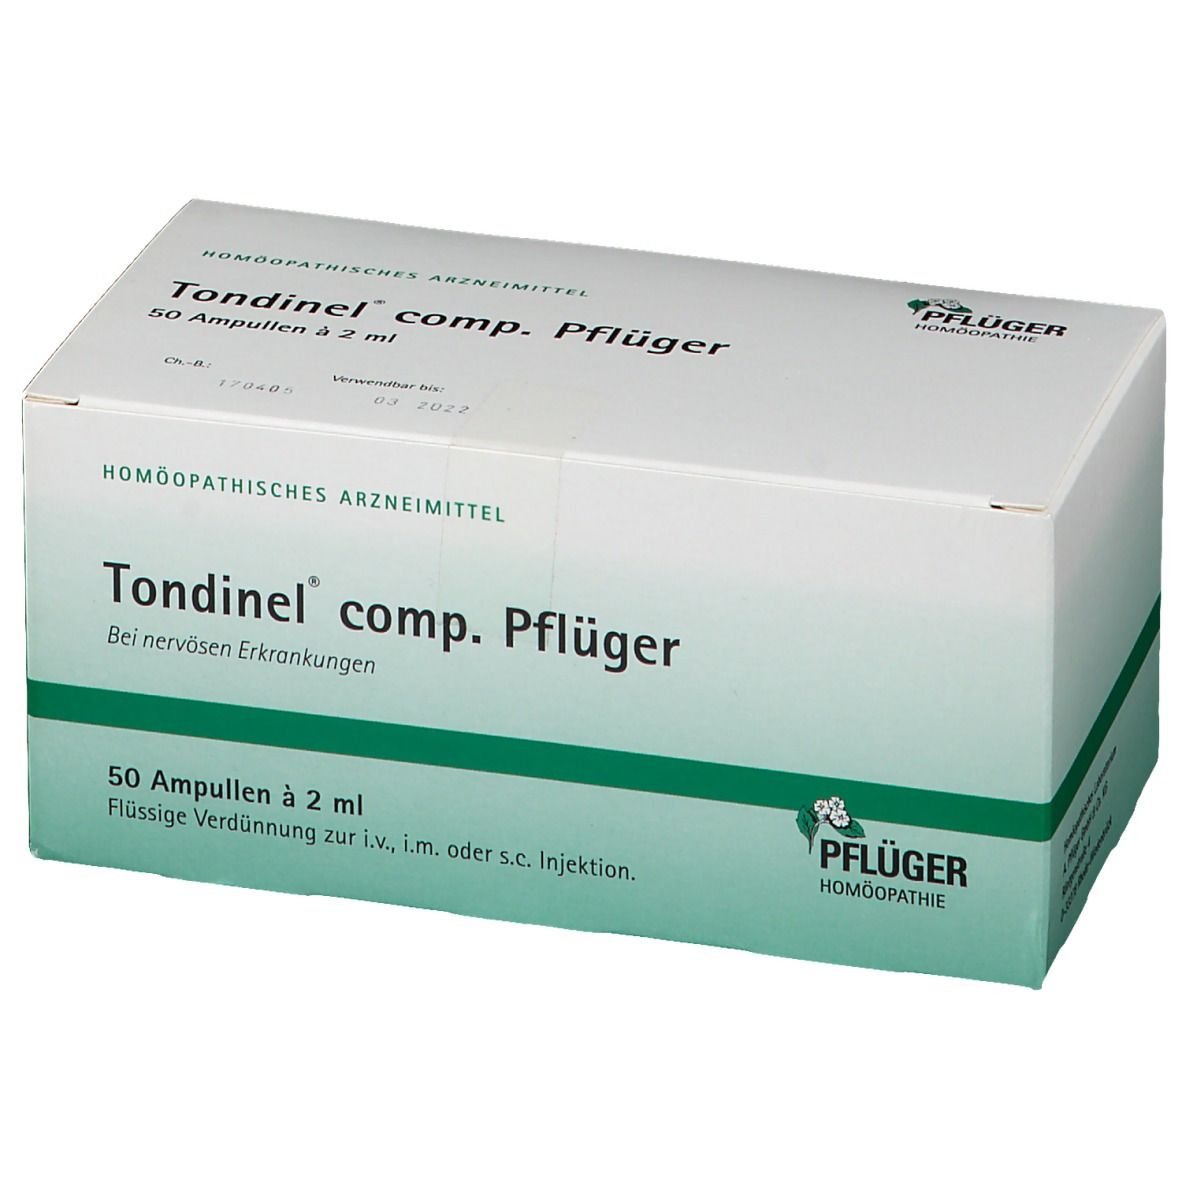 Tondinel® comp. Pflüger